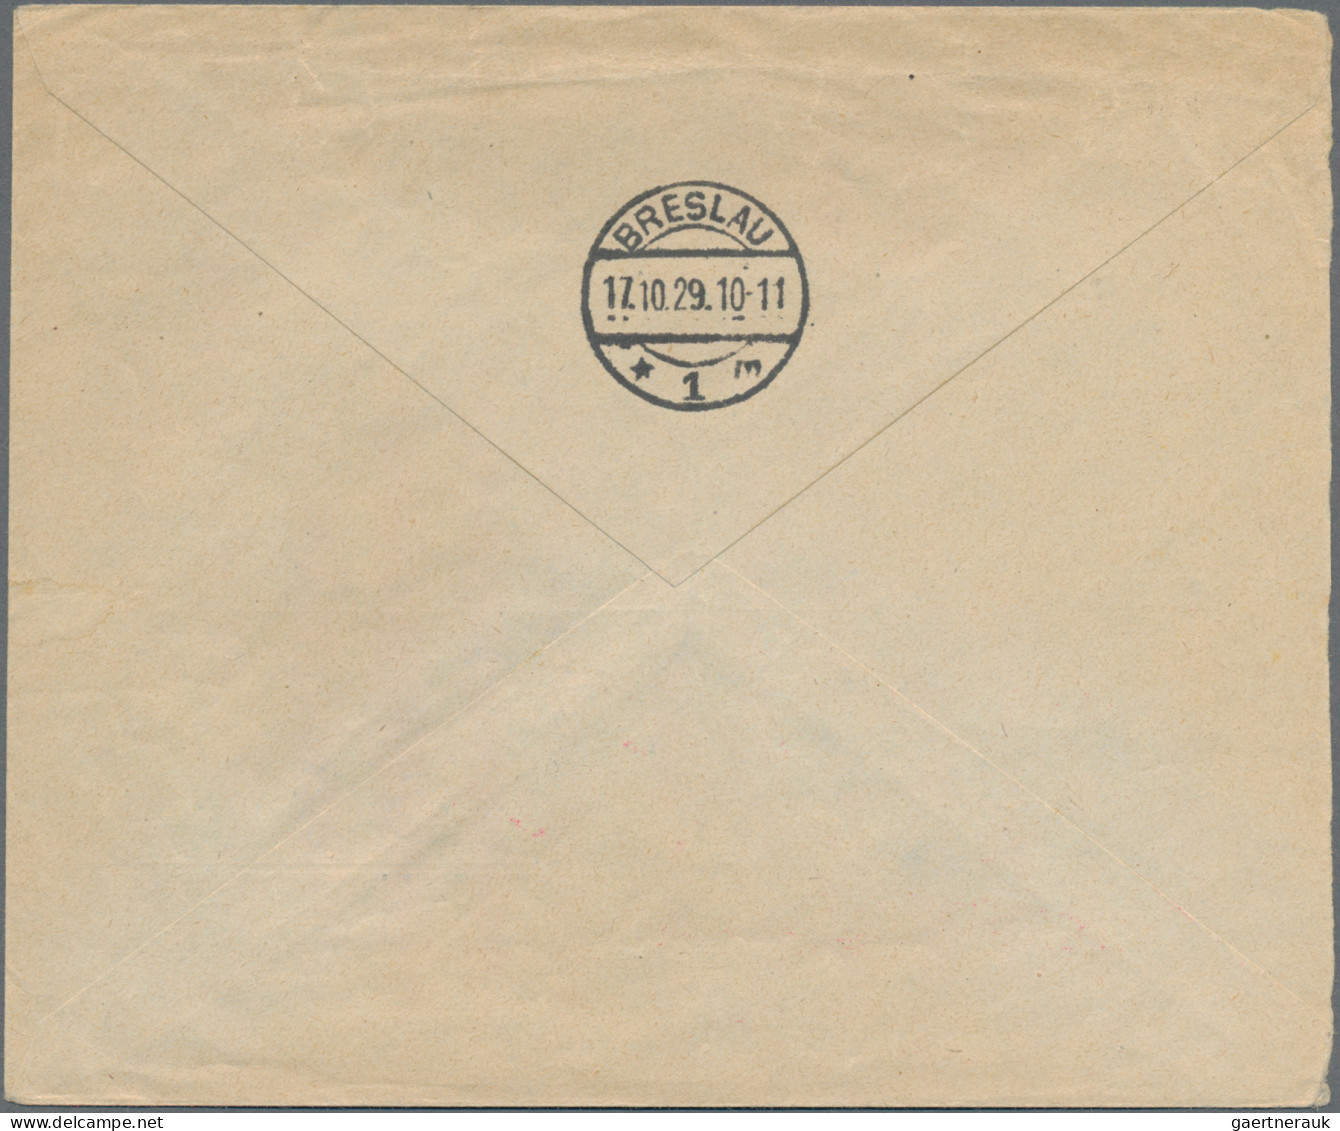 Zeppelin Mail - Germany: 1929, 7.10., Schlesienfahrt, Bordpostbrief Frankiert Mi - Poste Aérienne & Zeppelin